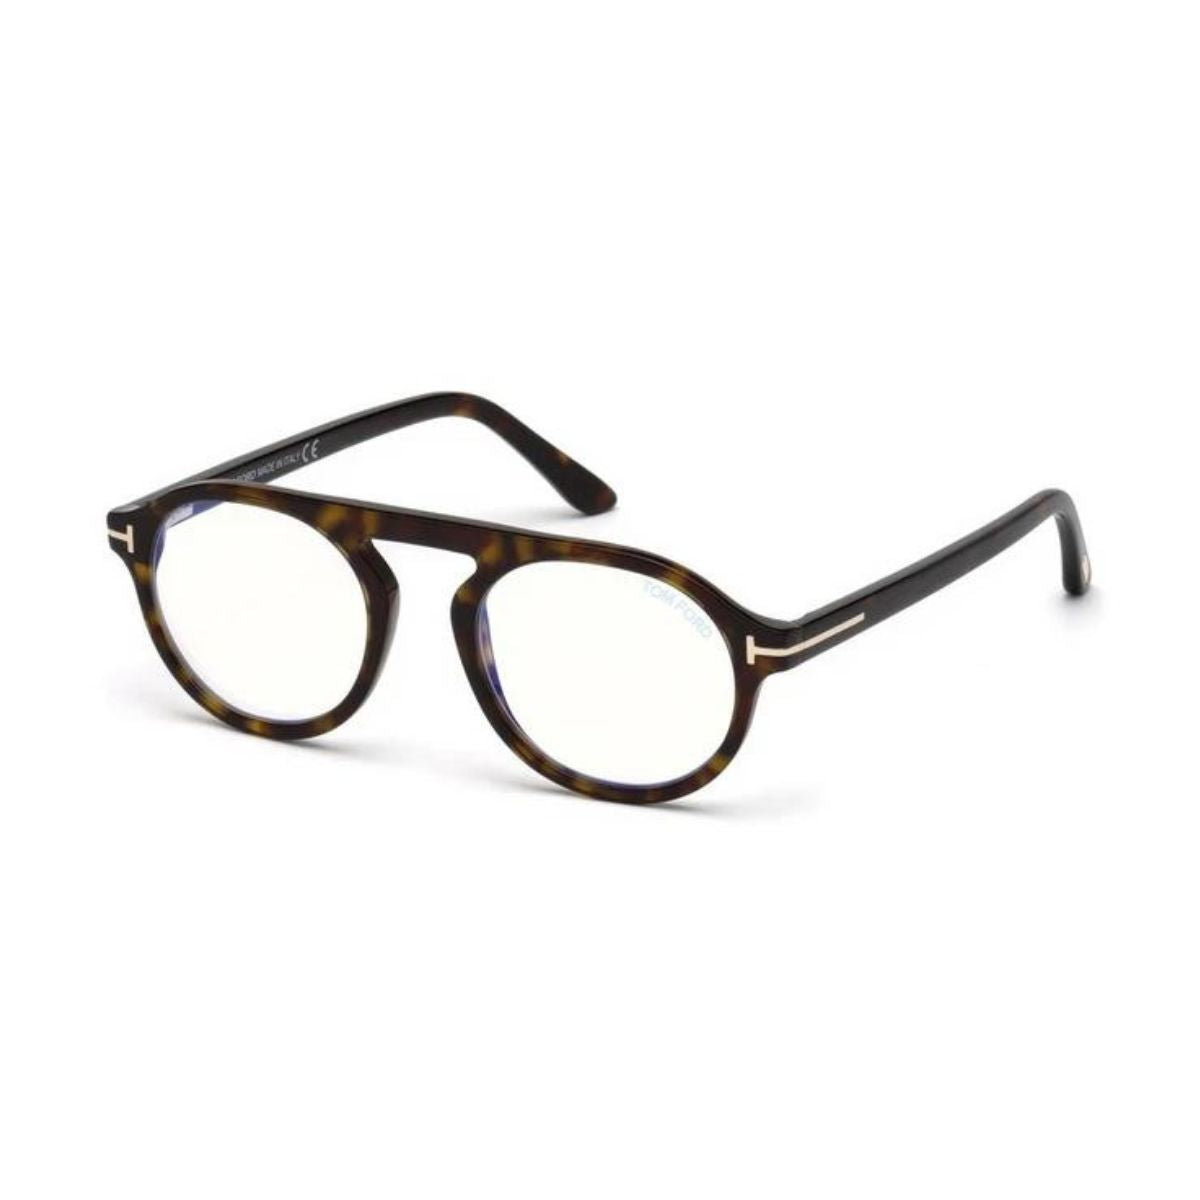 "Tom Ford 5534-B 052 eyesight glasses frame for men and women online at optorium"